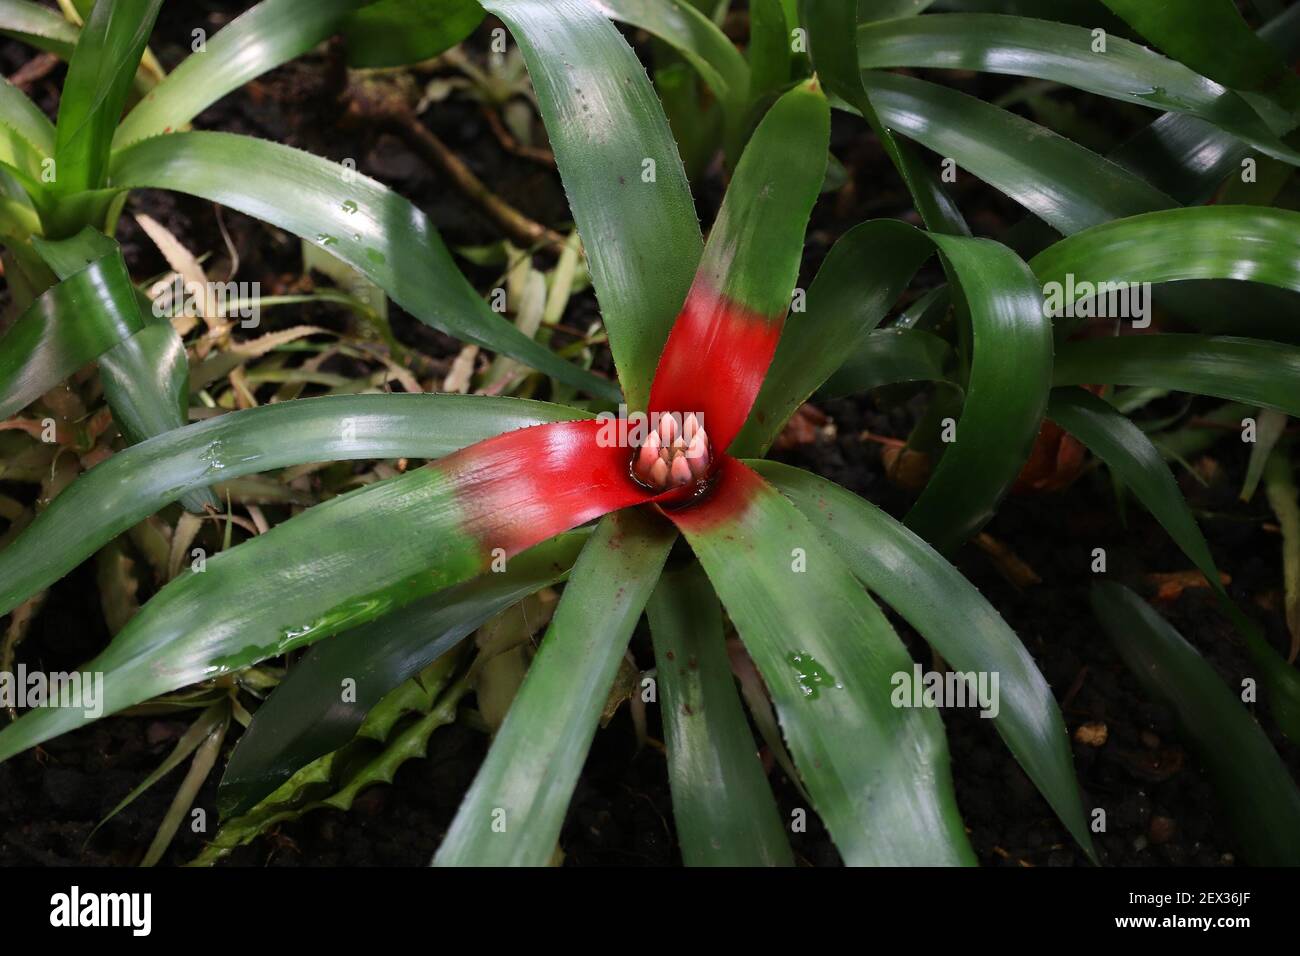 Usine de broméliad. Espèces végétales de Neorelia cyanoa, espèces endémiques du Brésil. Plante ornementale à Kew Gardens, Londres. Banque D'Images